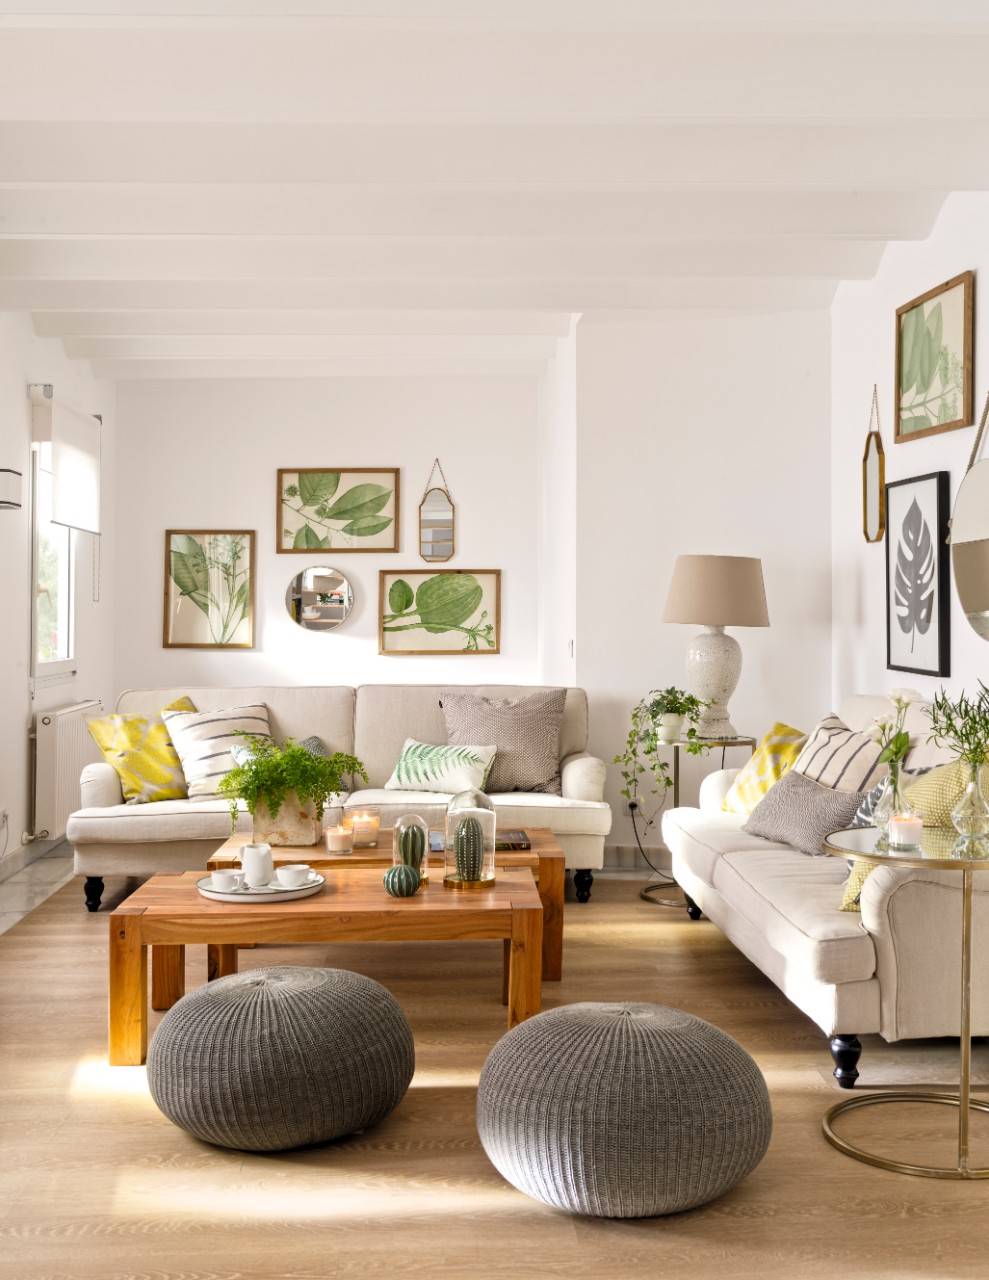 Salón con sofás y pufs grises, cuadros botánicos y cojines verdes y amarillos.